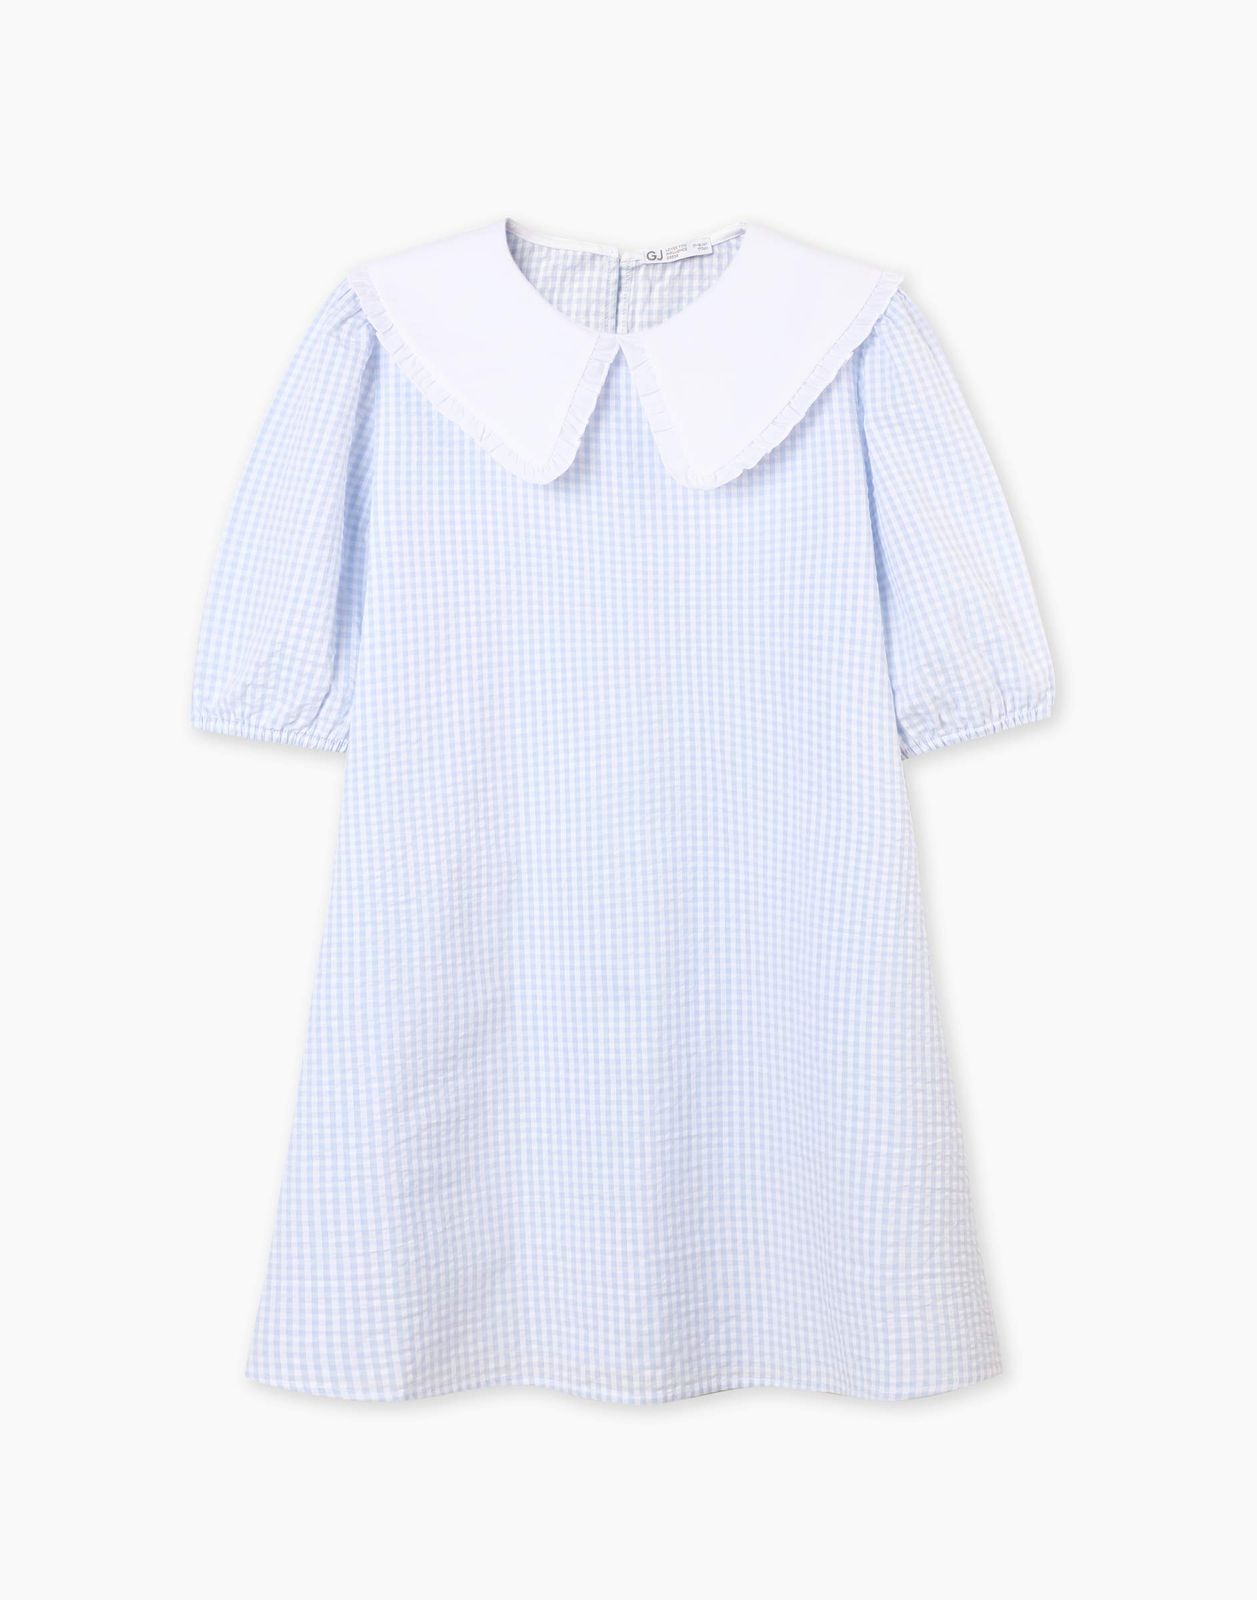 Платье детское Gloria Jeans GDR028214, голубой/белый, 164